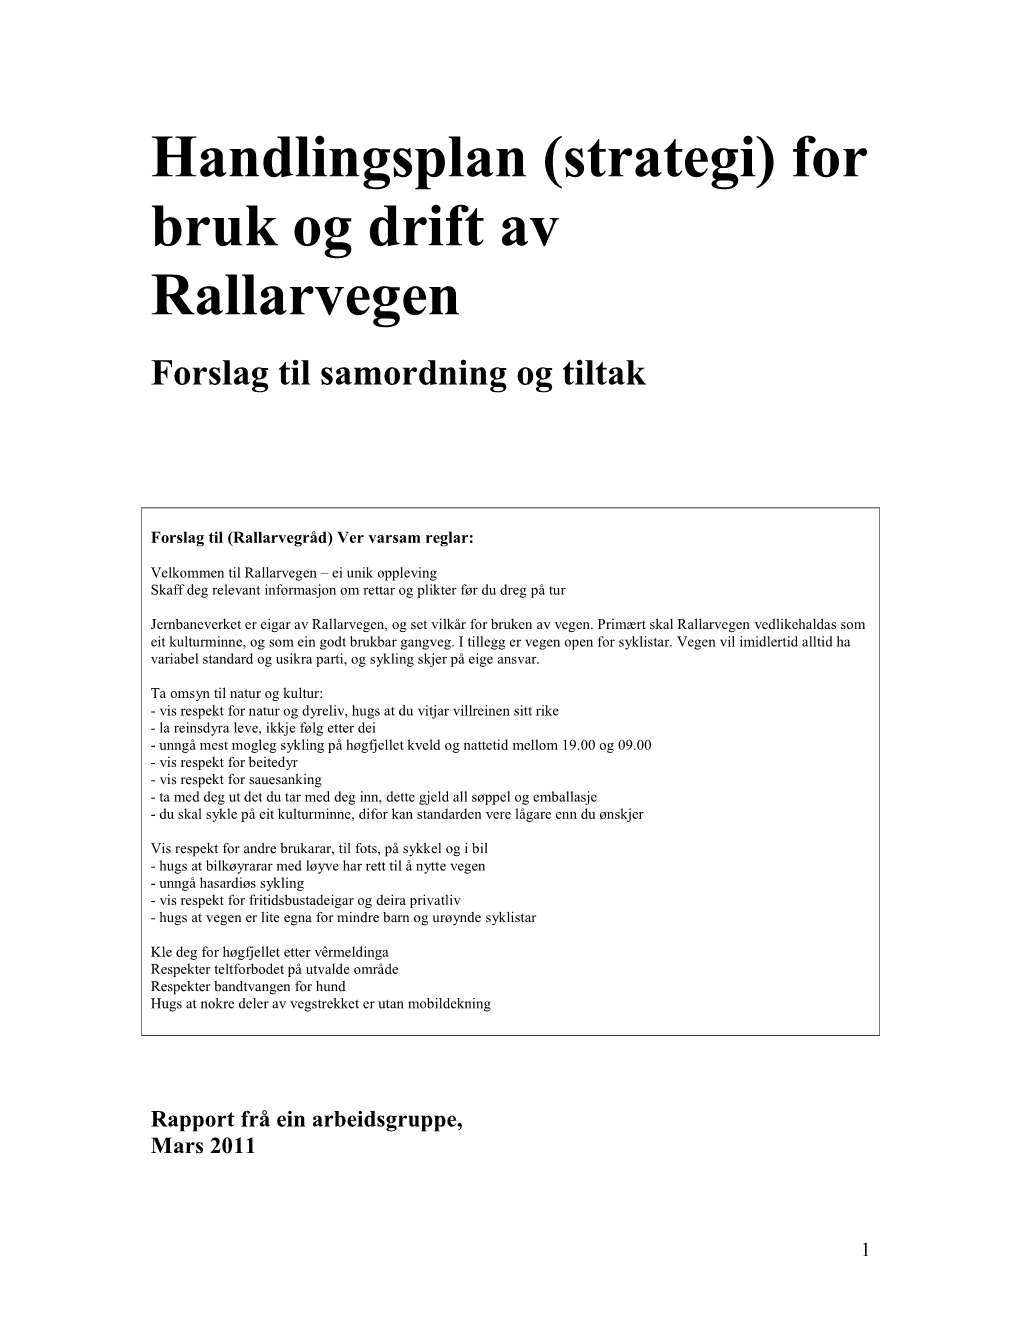 Handlingsplan (Strategi) for Bruk Og Drift Av Rallarvegen Er Å Leggje Til Rette for Berekraftig Bruk Av Vegen